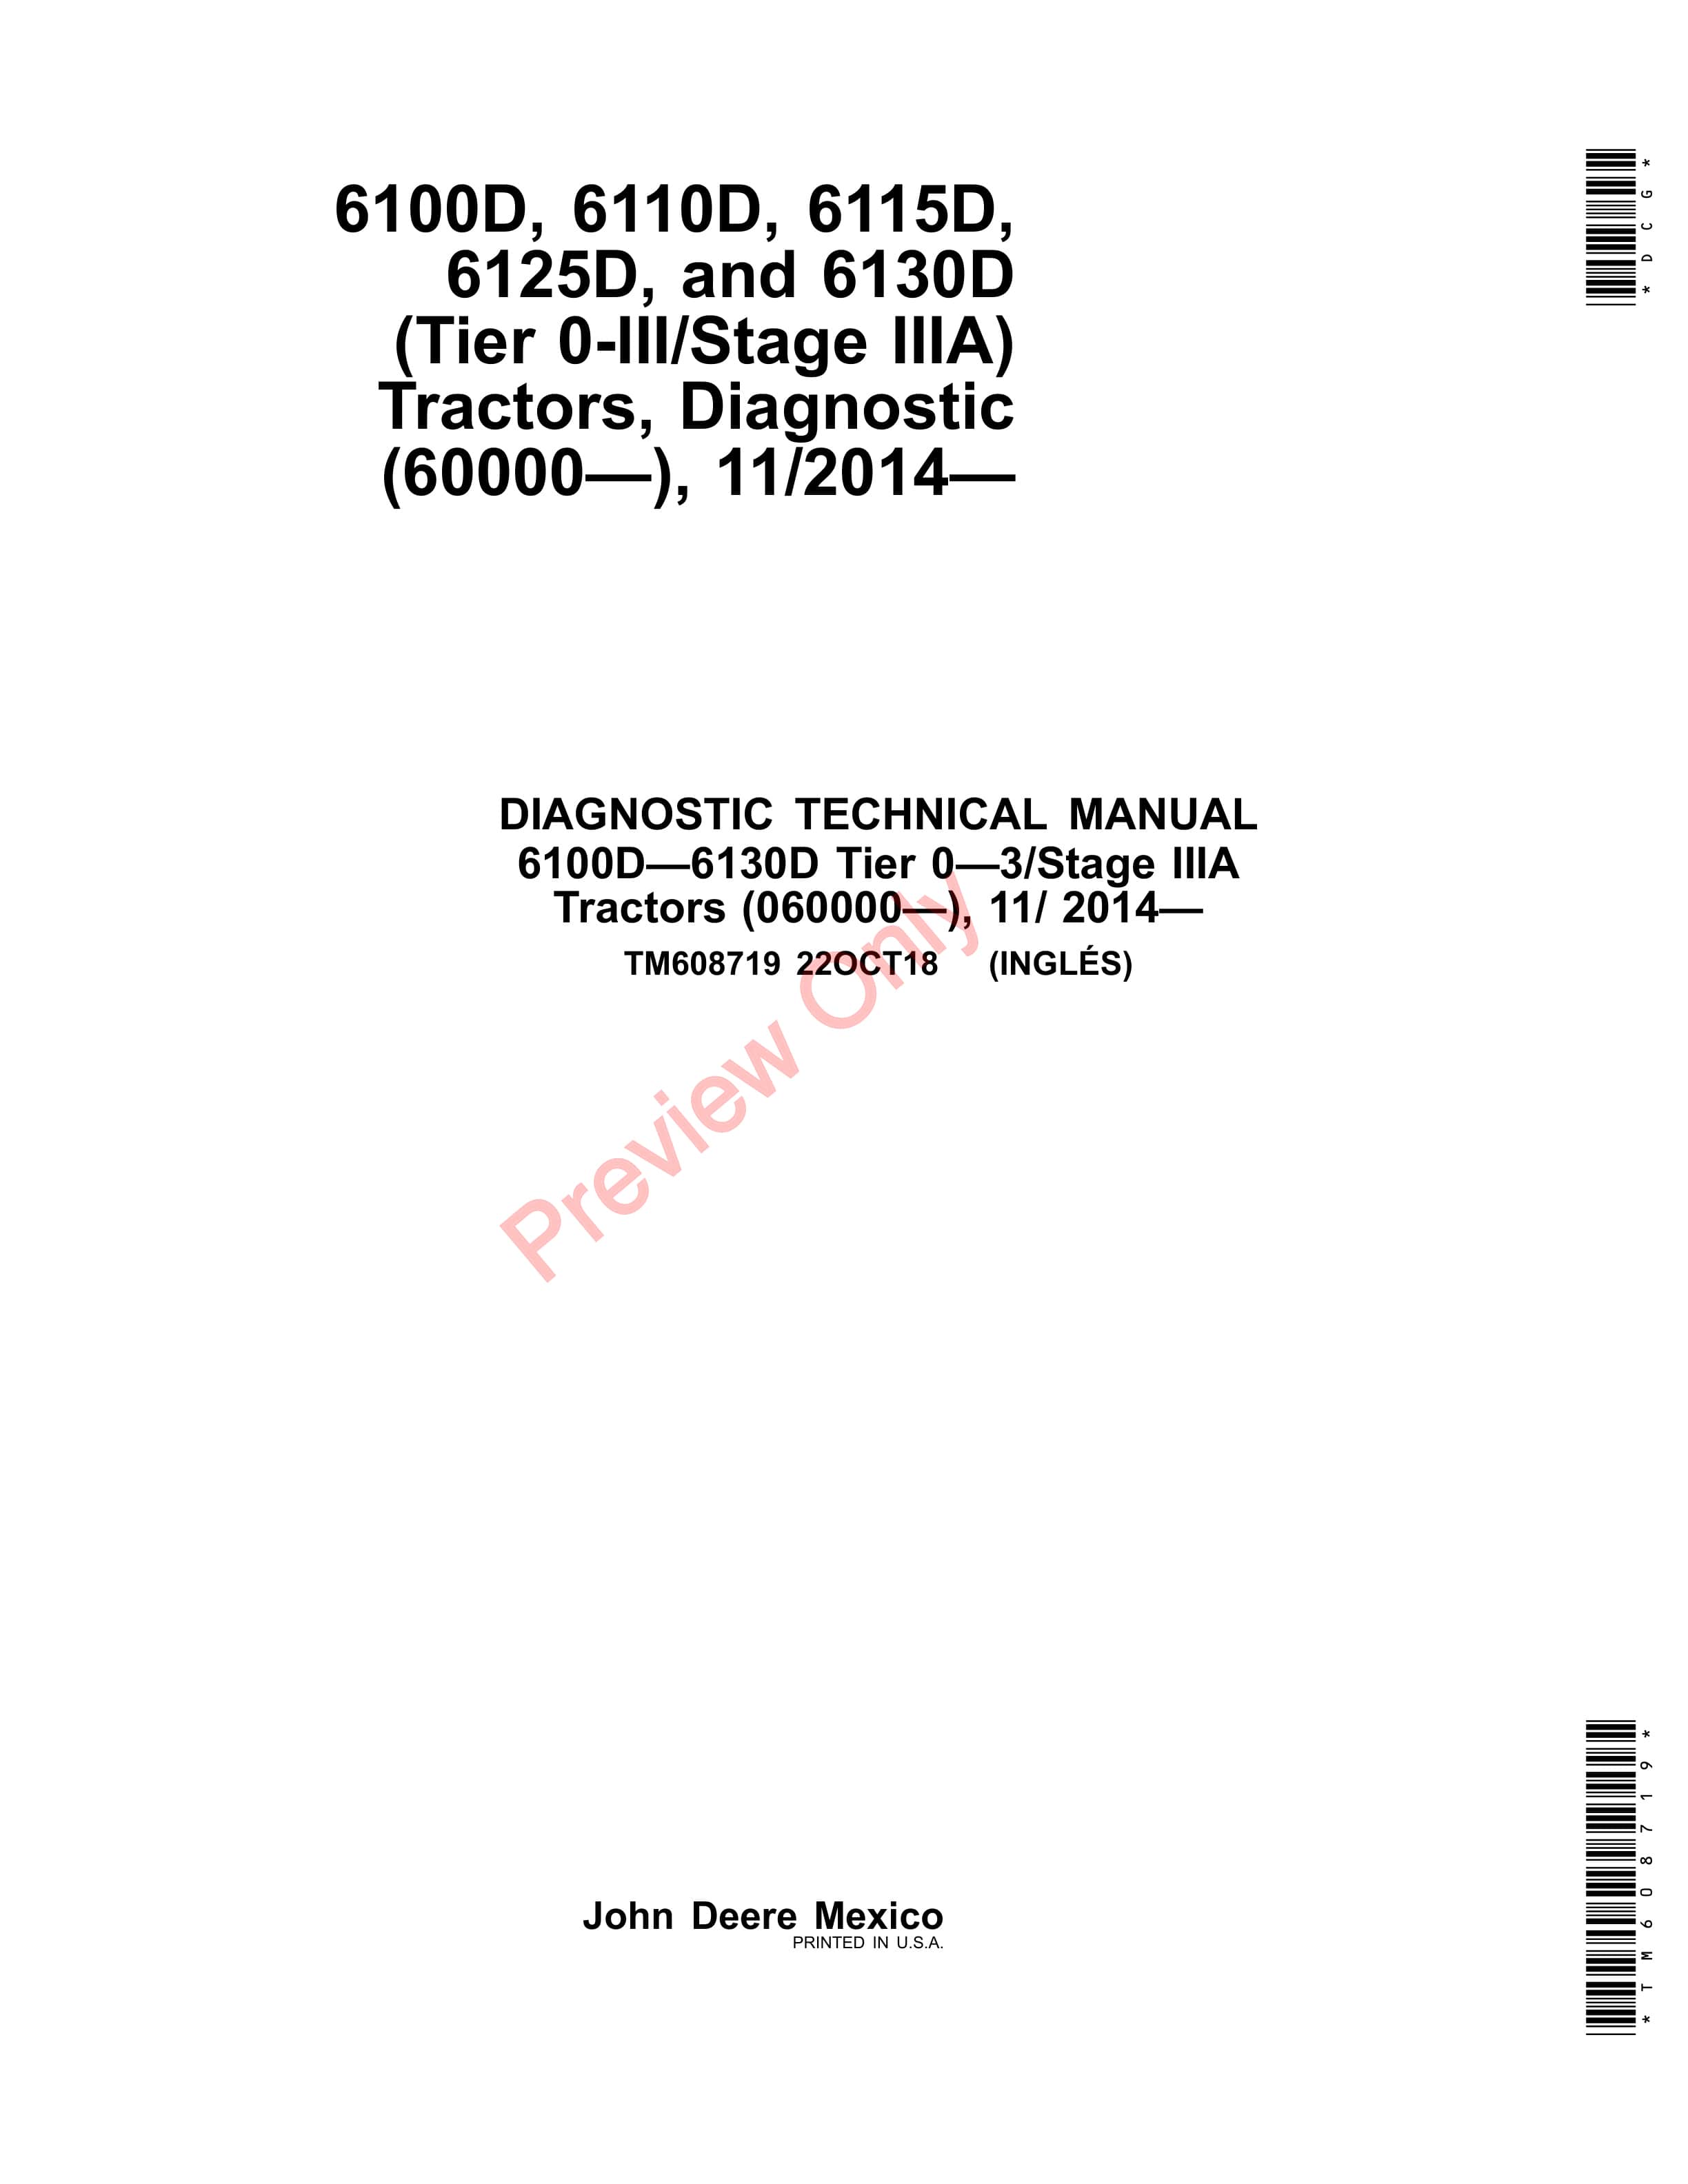 John Deere 6100D 6110D 6115D 6125D and 6130D Tractors 112014 Diagnostic Technical Manual TM608719 22OCT18 1